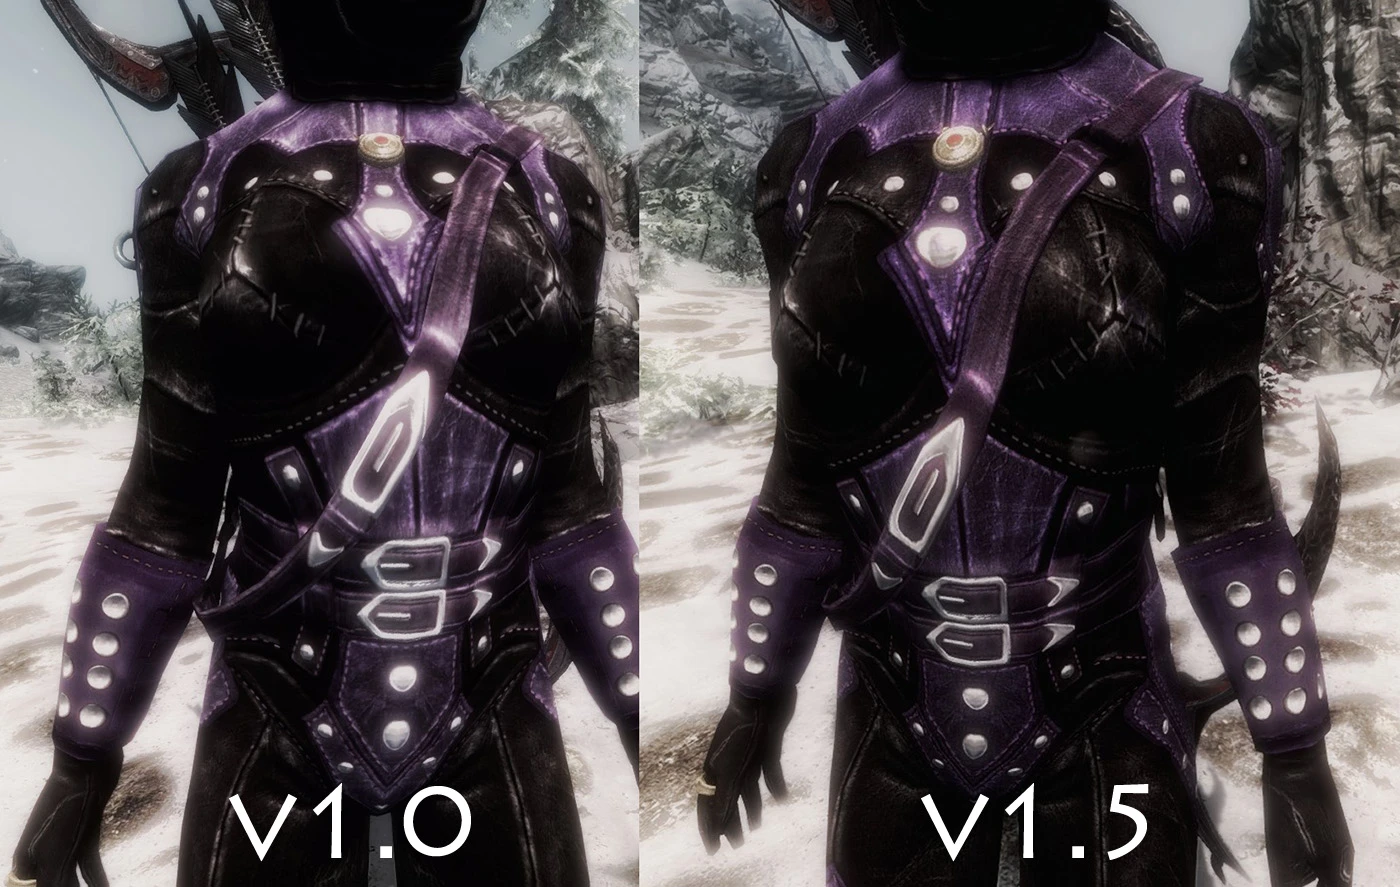 P U R P L E A R M O R Zonealarm Results - purple roblox armor